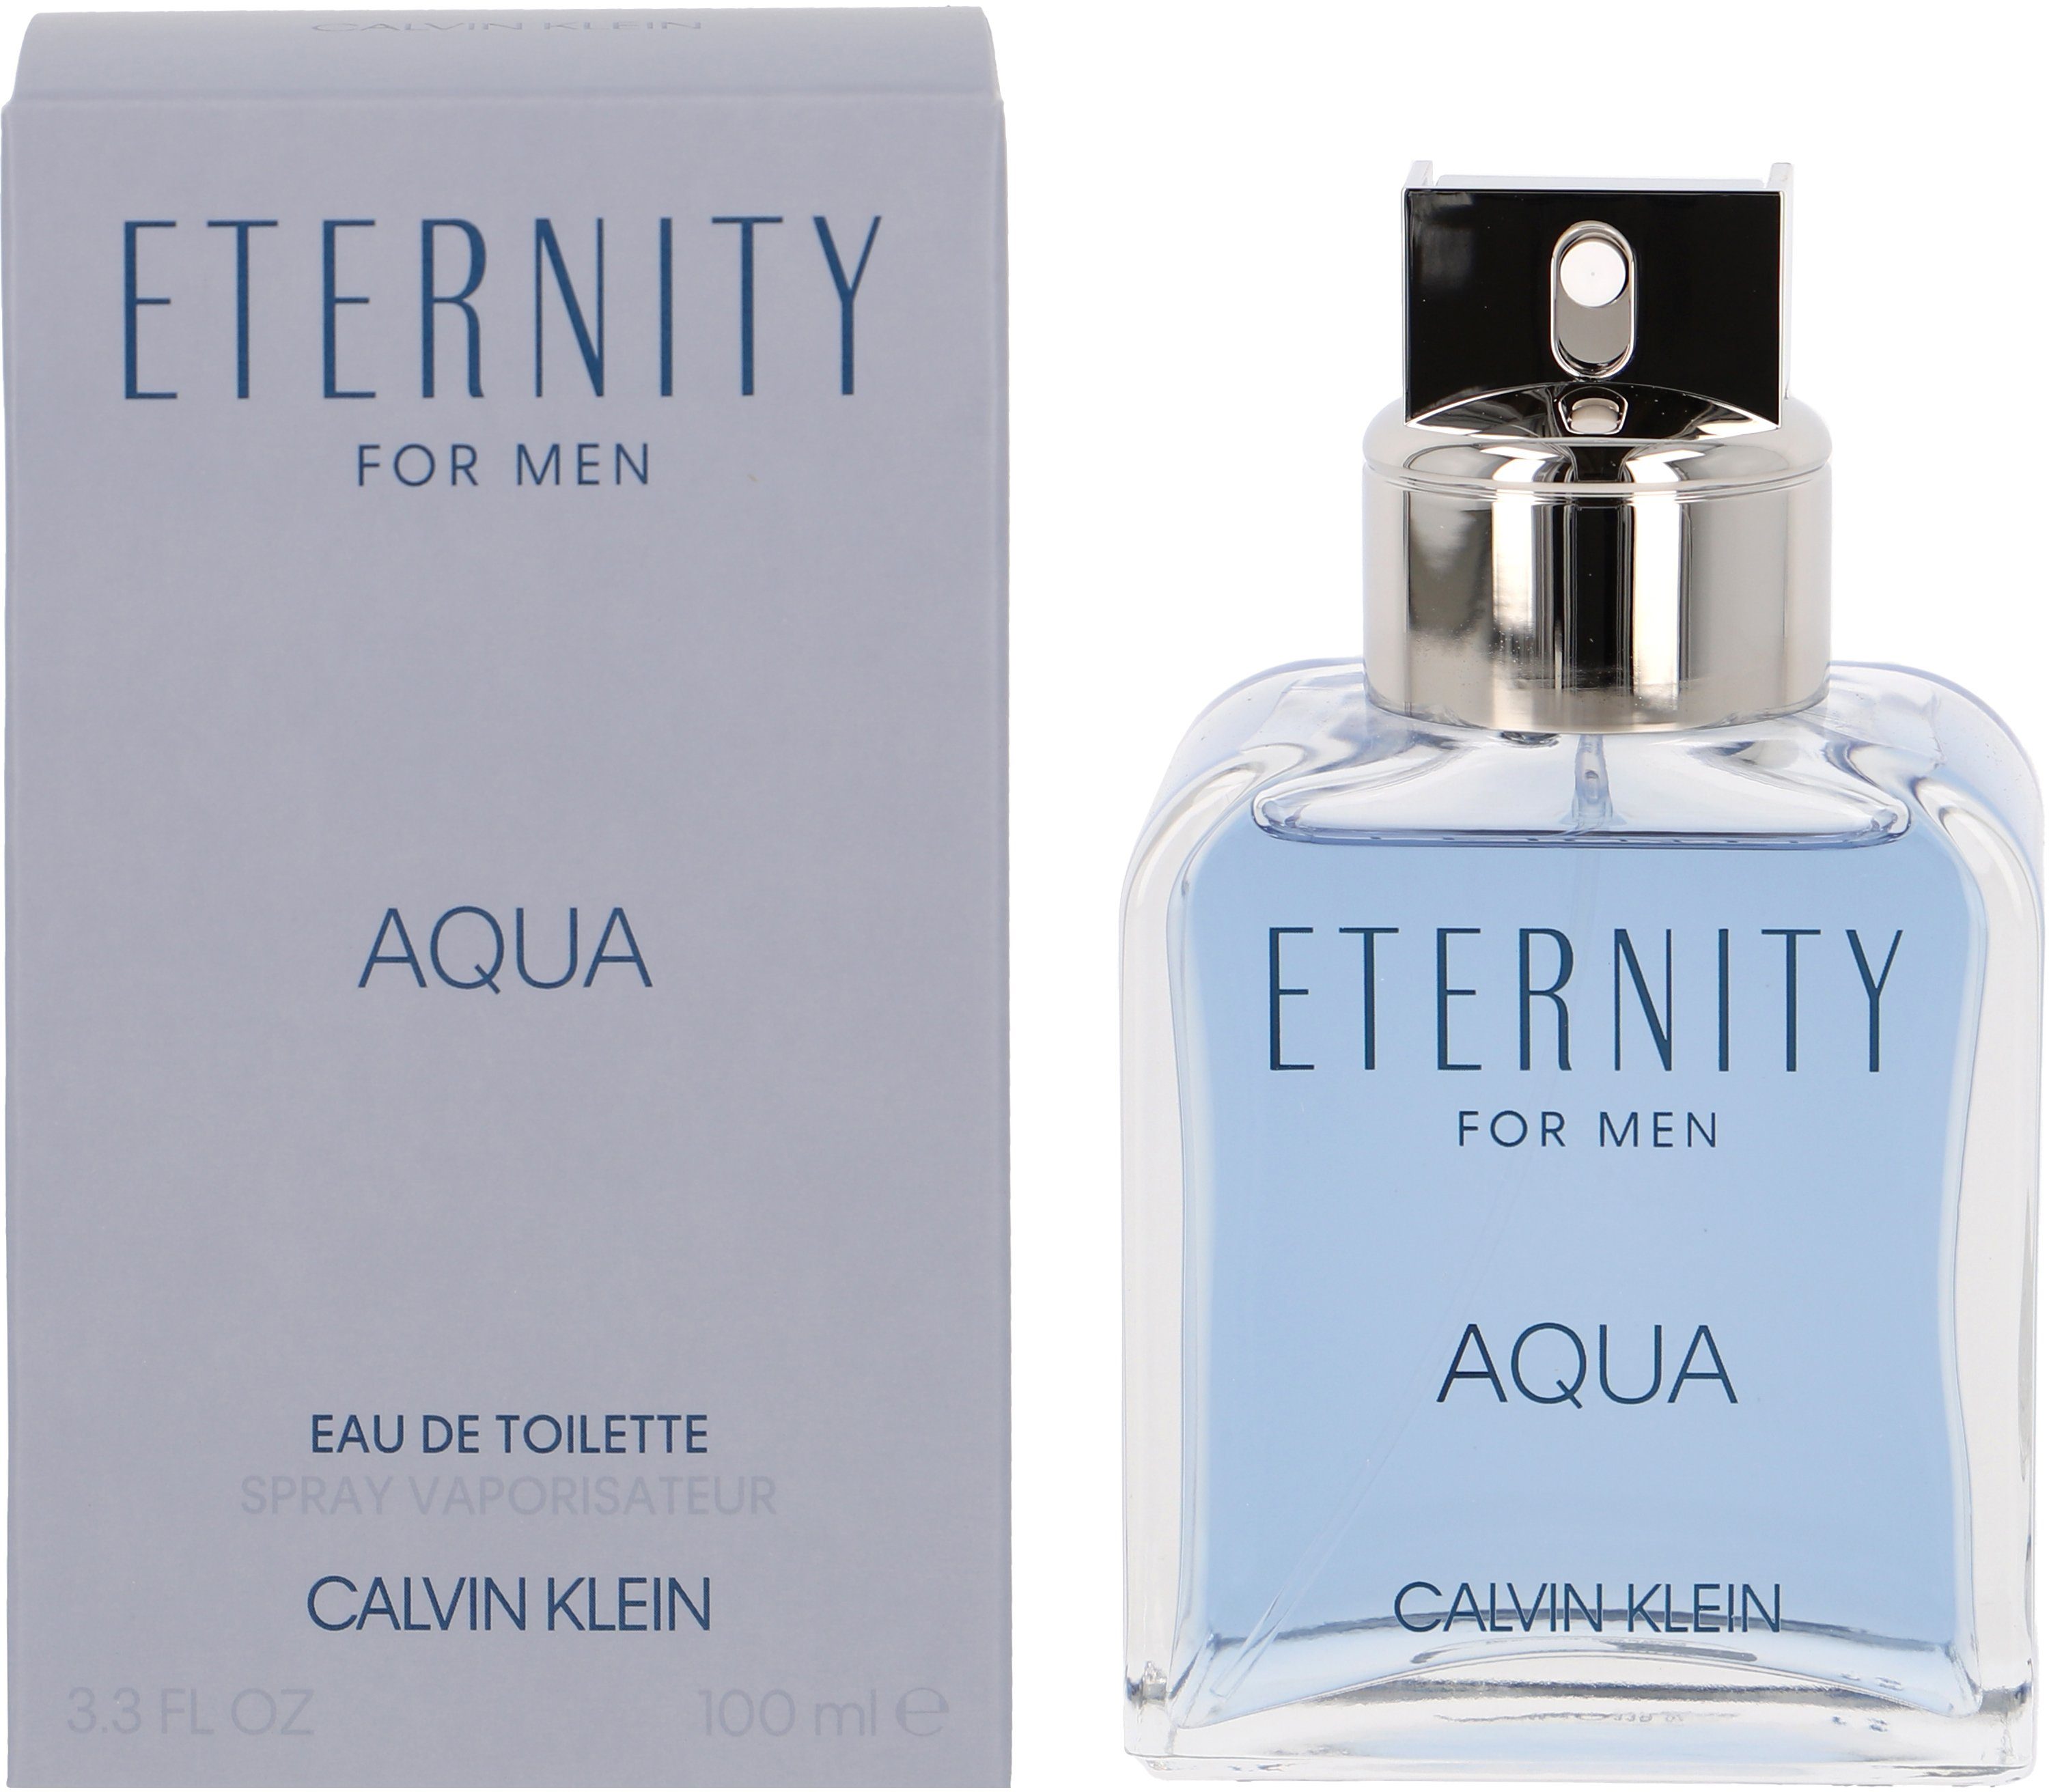 Eau Men Eternity Toilette Aqua KLEIN Klein de Calvin CALVIN